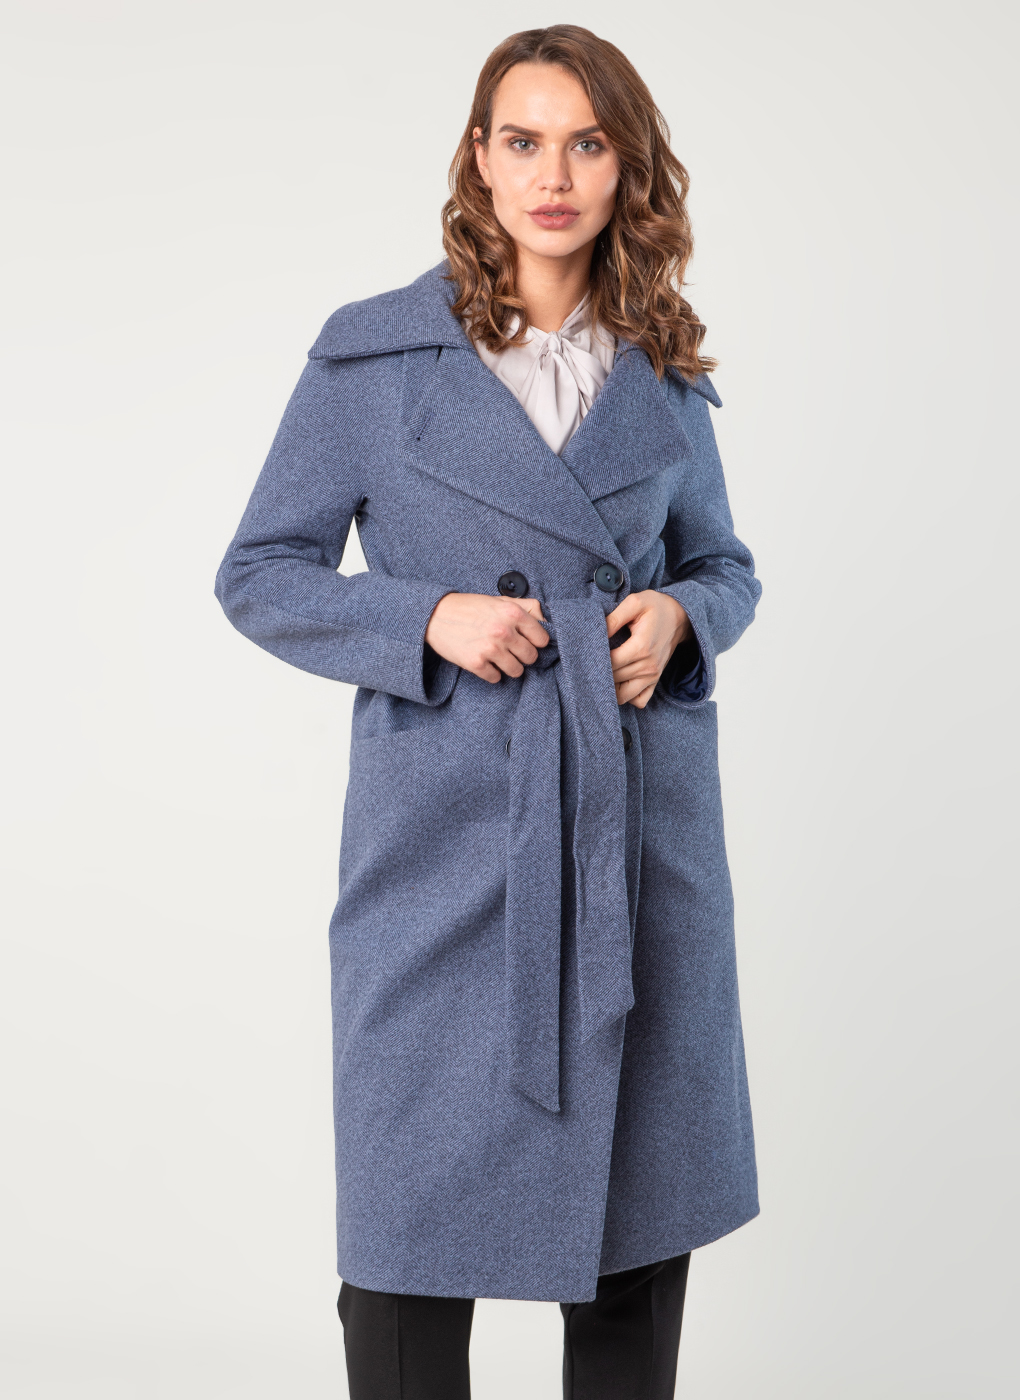 Пальто женское Sezalto 60195 синее 44